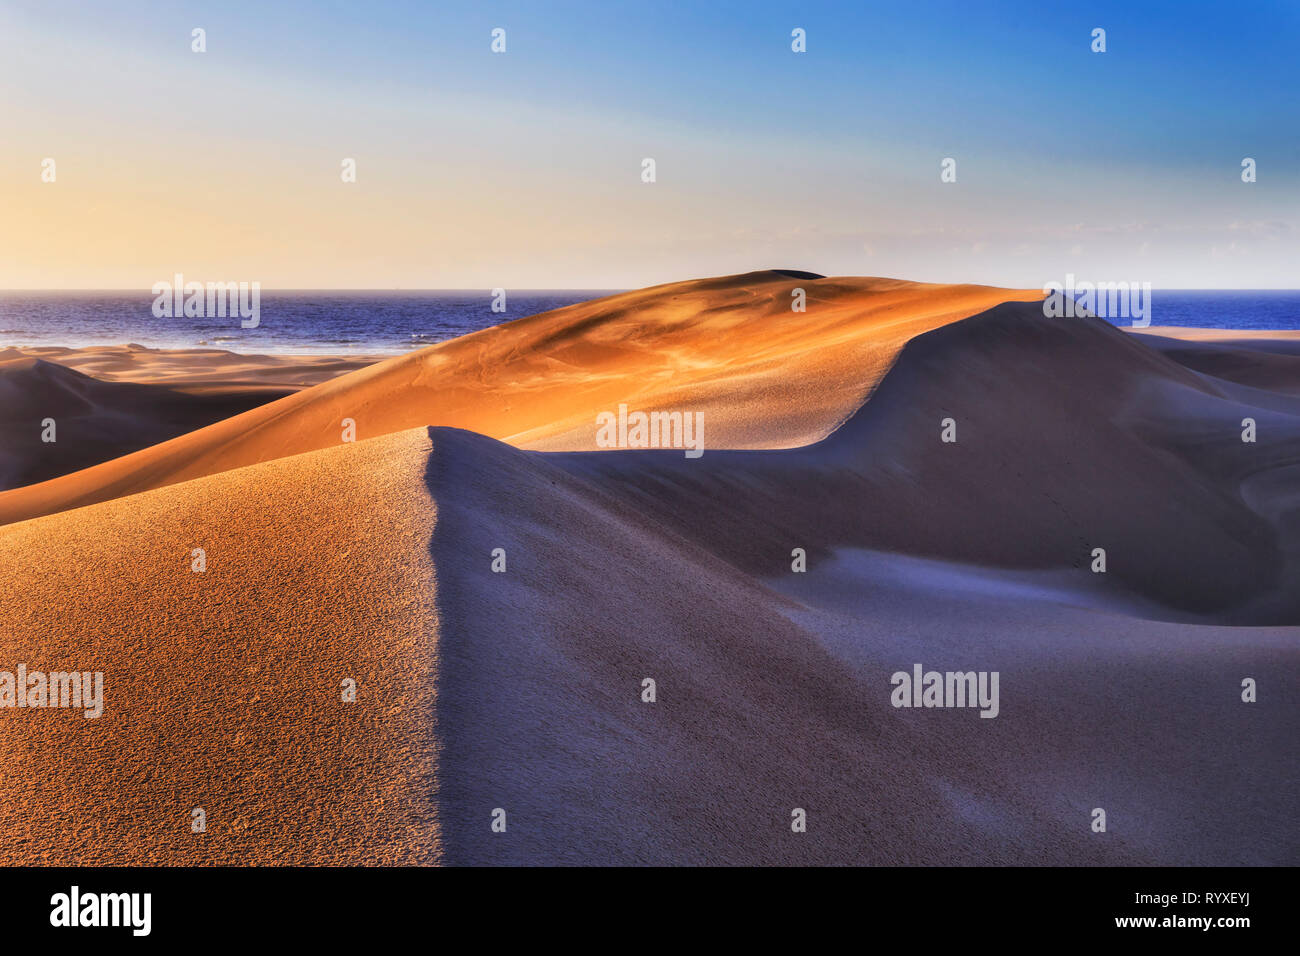 Dunes de sable intactes sous la lumière du matin doux et chaleureux de Stockton Beach sur la côte pacifique de l'Australie. Banque D'Images